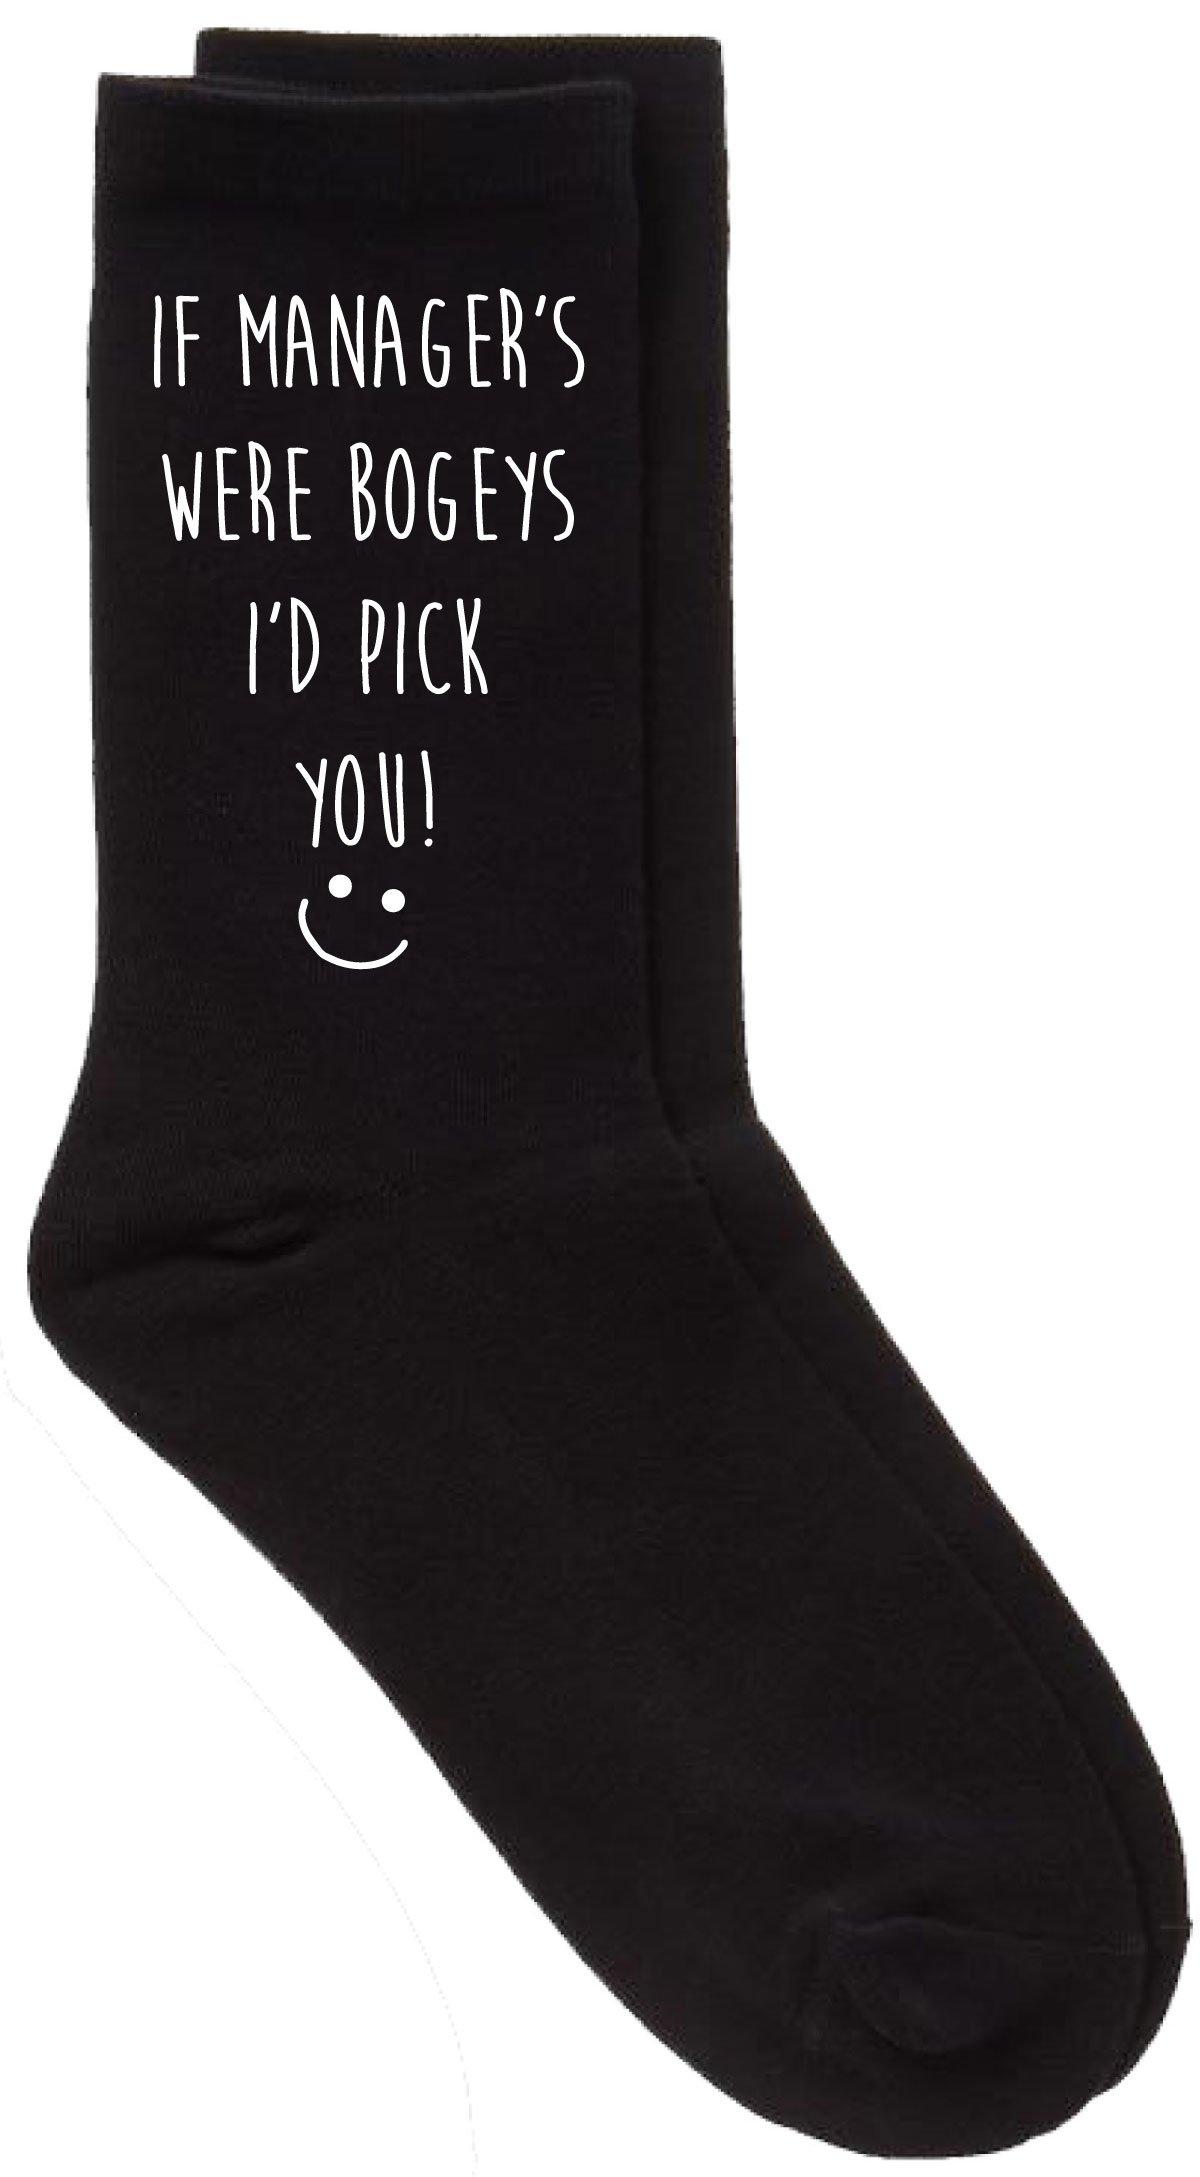 If Manager's Were Bogeys I'd Pick You Black Calf Socks